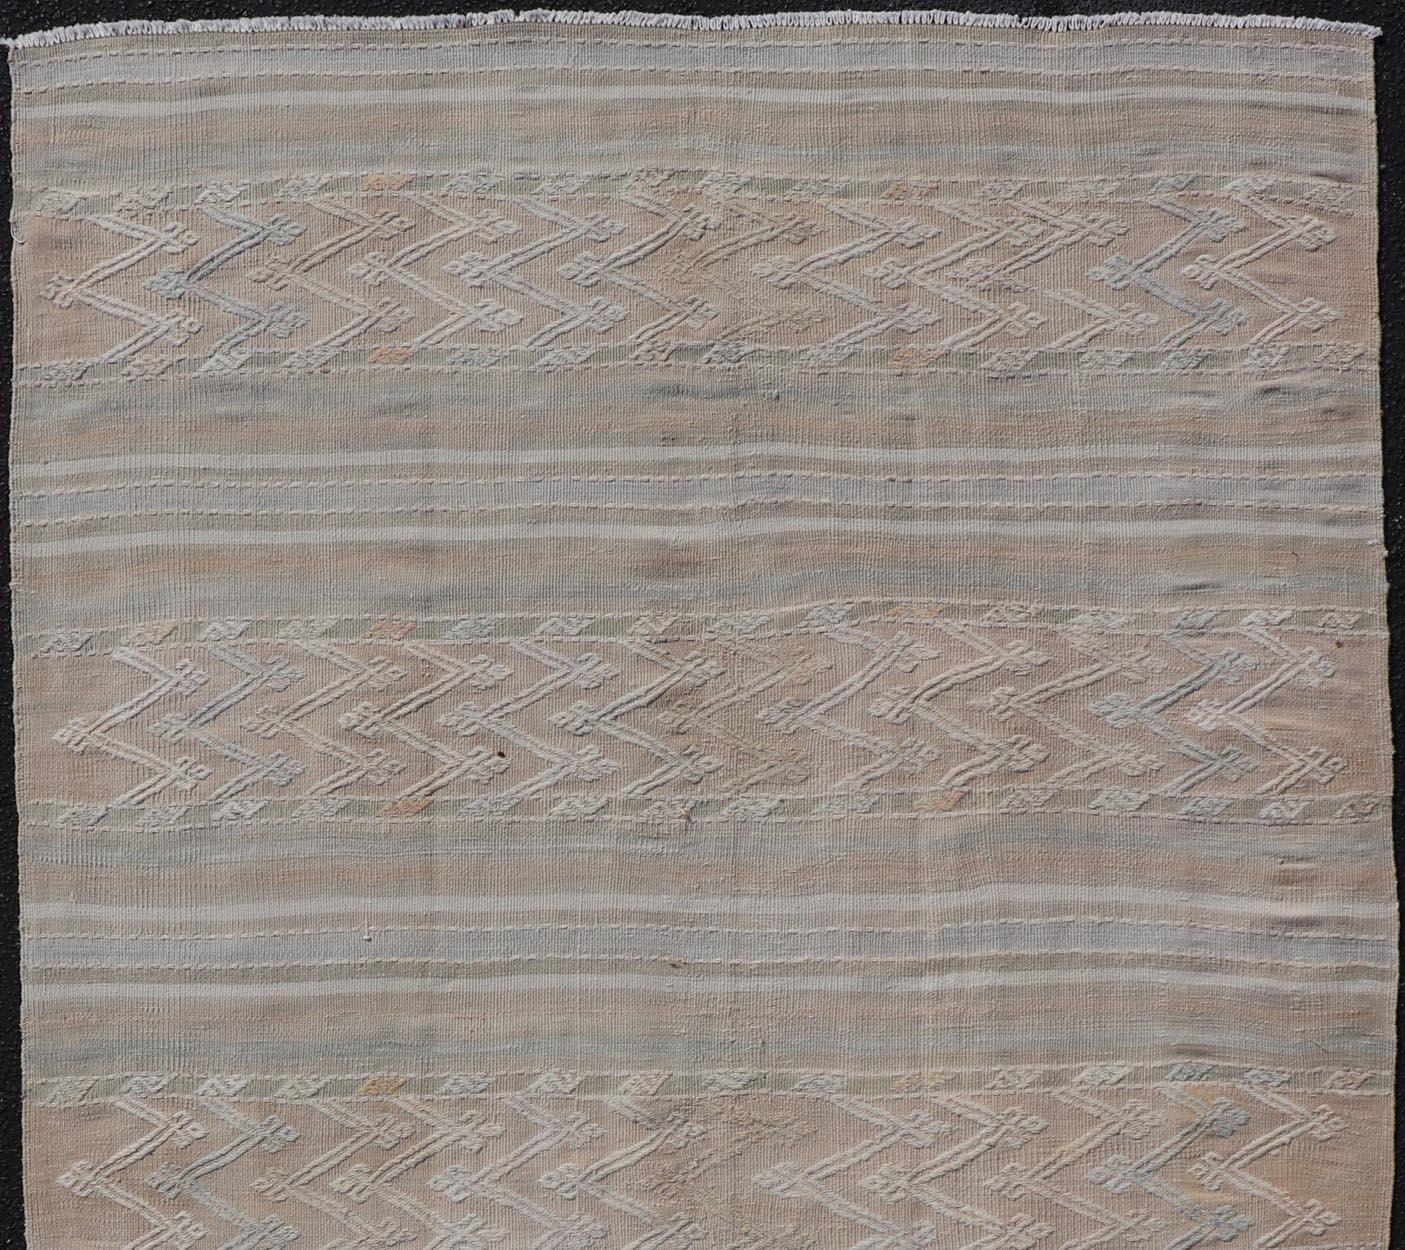 Tapis Kilim turc vintage aux couleurs sourdes et aux motifs tribaux. Keivan Woven Arts / tapis EN-13478, pays d'origine / type : Turquie / Kilim , circa 1950
Mesures : 4'5 x 7'9.